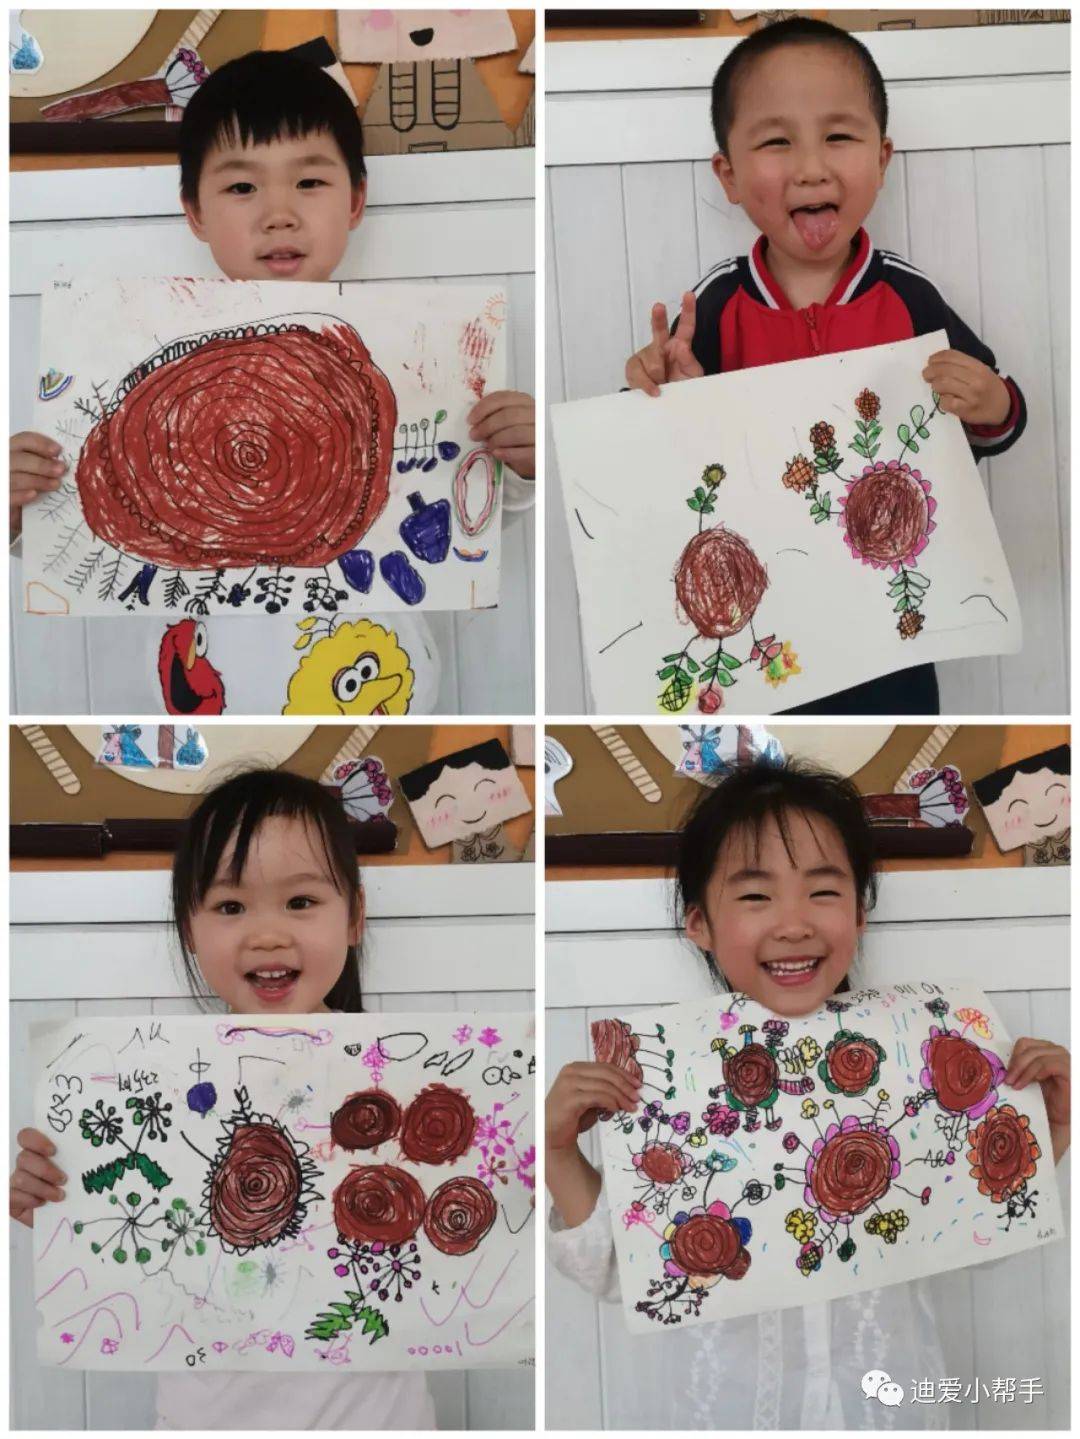 “遇见童心•邂逅童画”——迪爱宝贝麓山幼儿园幼儿涂鸦活动